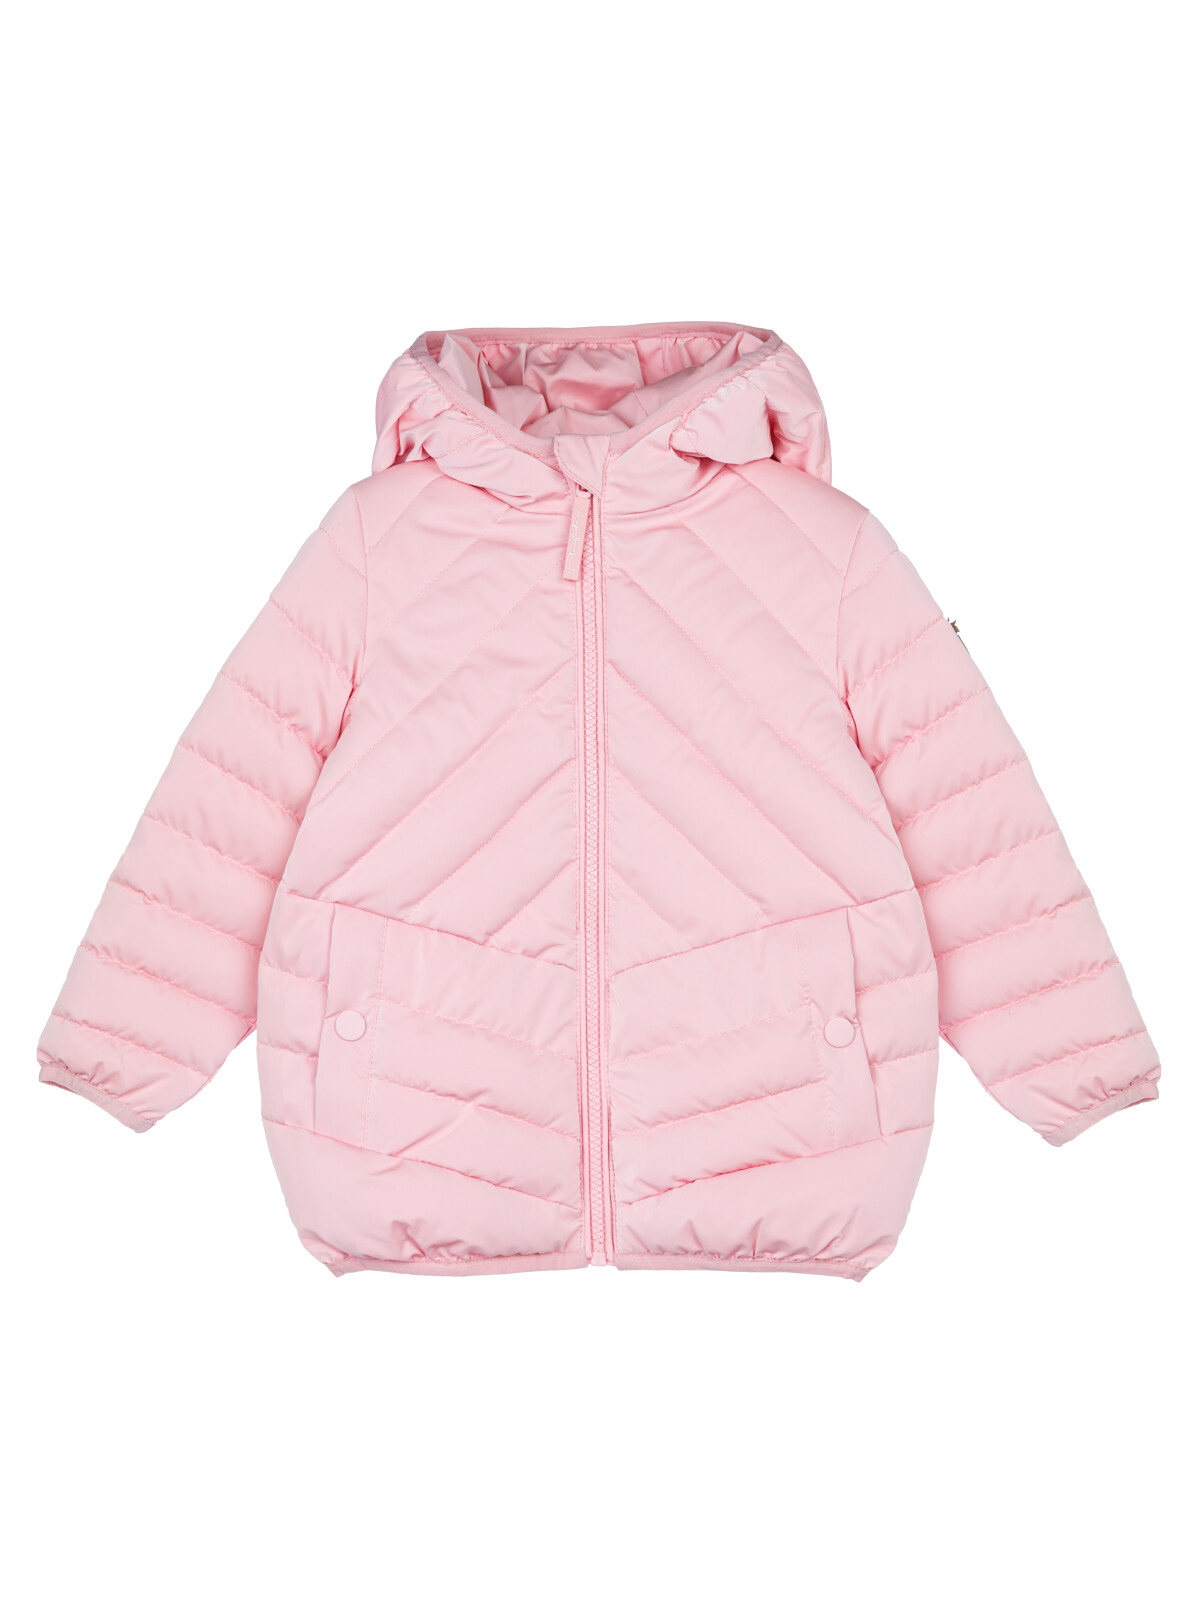 Куртка детская PlayToday 12429002, светло-розовый, 86